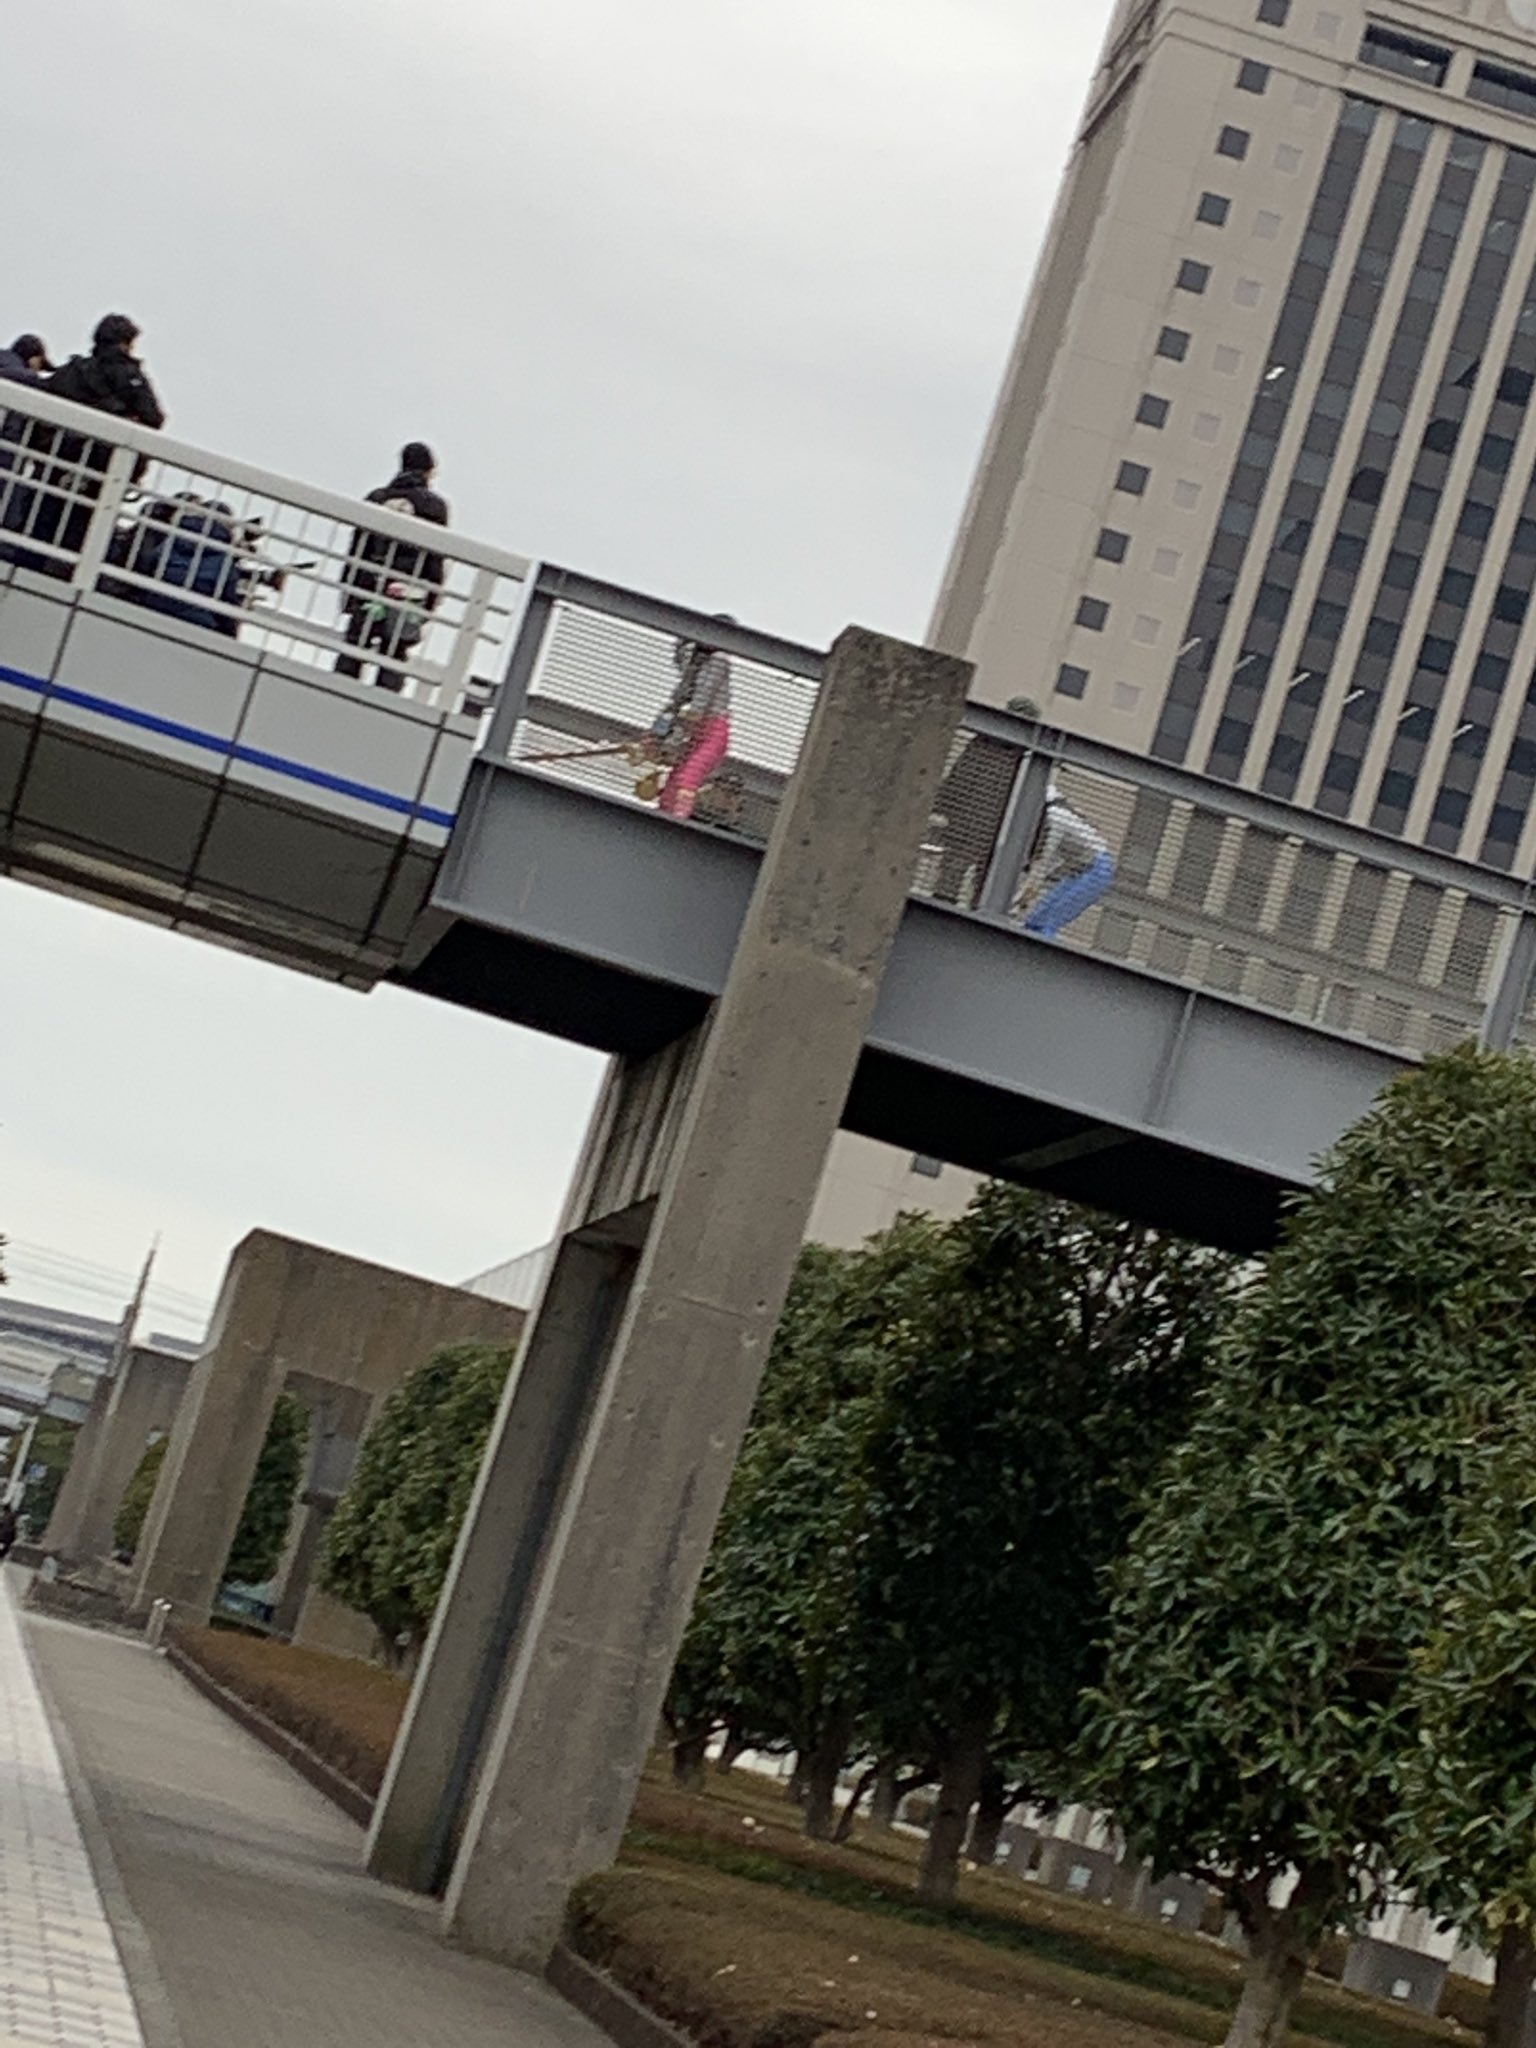 ネタバレ リュウソウジャー撮影バレ画像 リュウソウブルーとリュウソウピンクが陸橋の上でアクション ニチアサエイト